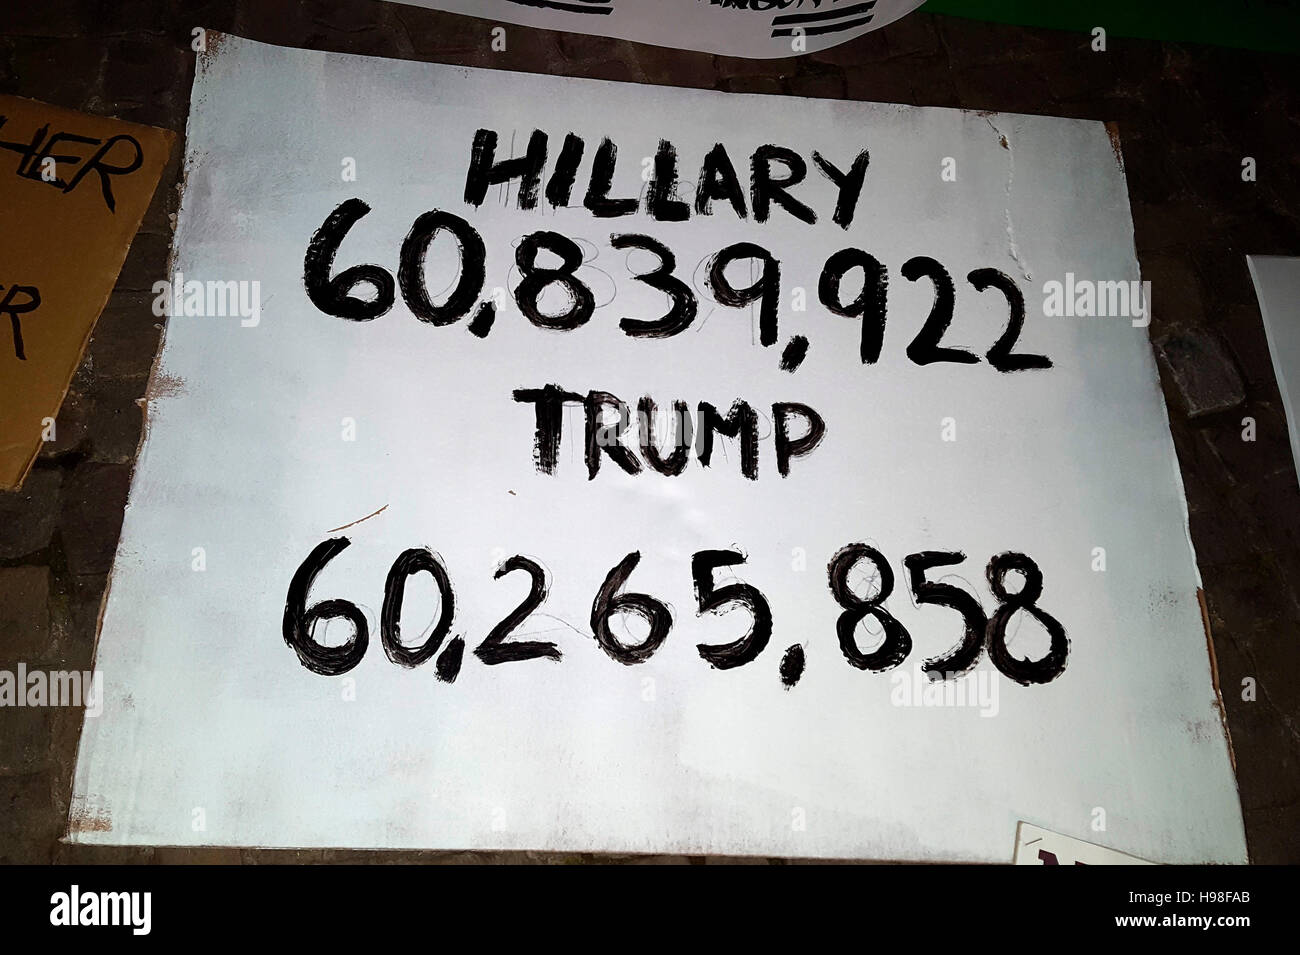 'Hillary 60.839.922 Trump 60.265.858' - Demonstration Und Protest Gegen Den Wahlsieg von Donald Trump Bei Den U.S.-Amerikanischen Praesidentschaftswahle Stockfoto